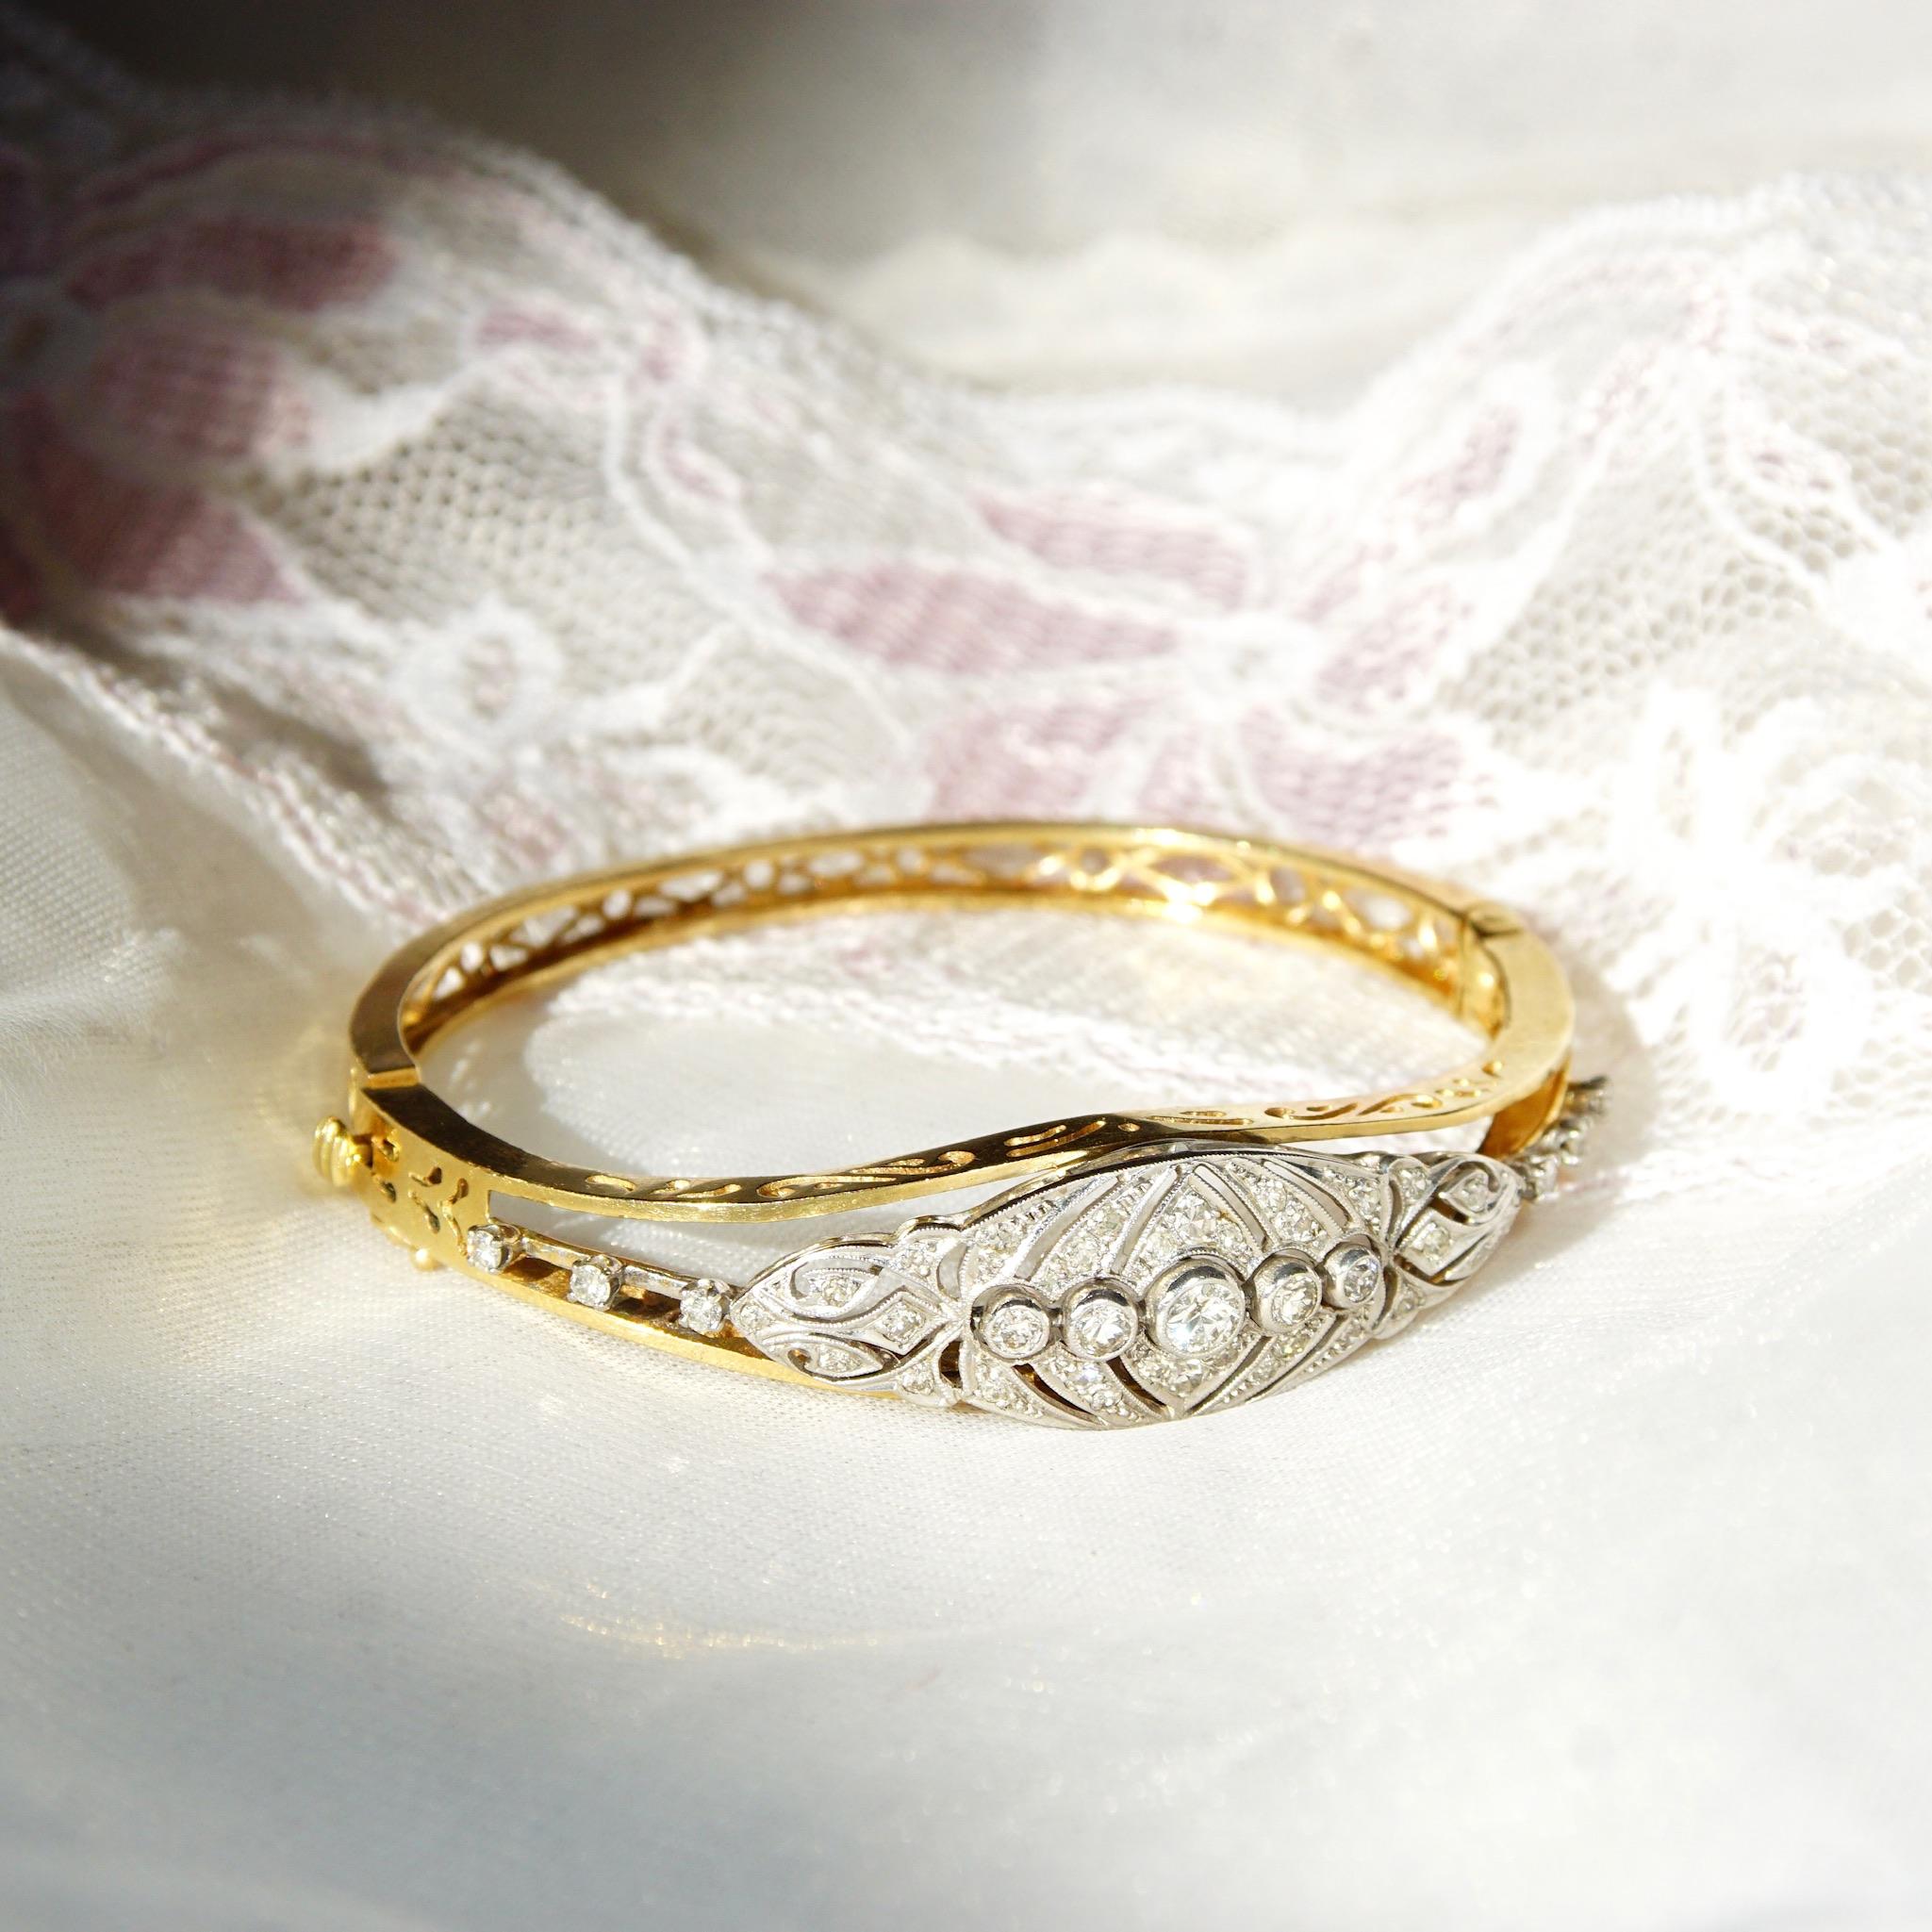 Un étonnant bracelet bangle à charnière en or jaune 14k et platine de l'époque édouardienne, composé d'une grappe de diamants. Le bracelet est composé d'une navette en platine incrustée de diamants et montée sur un bracelet en or effilé avec des